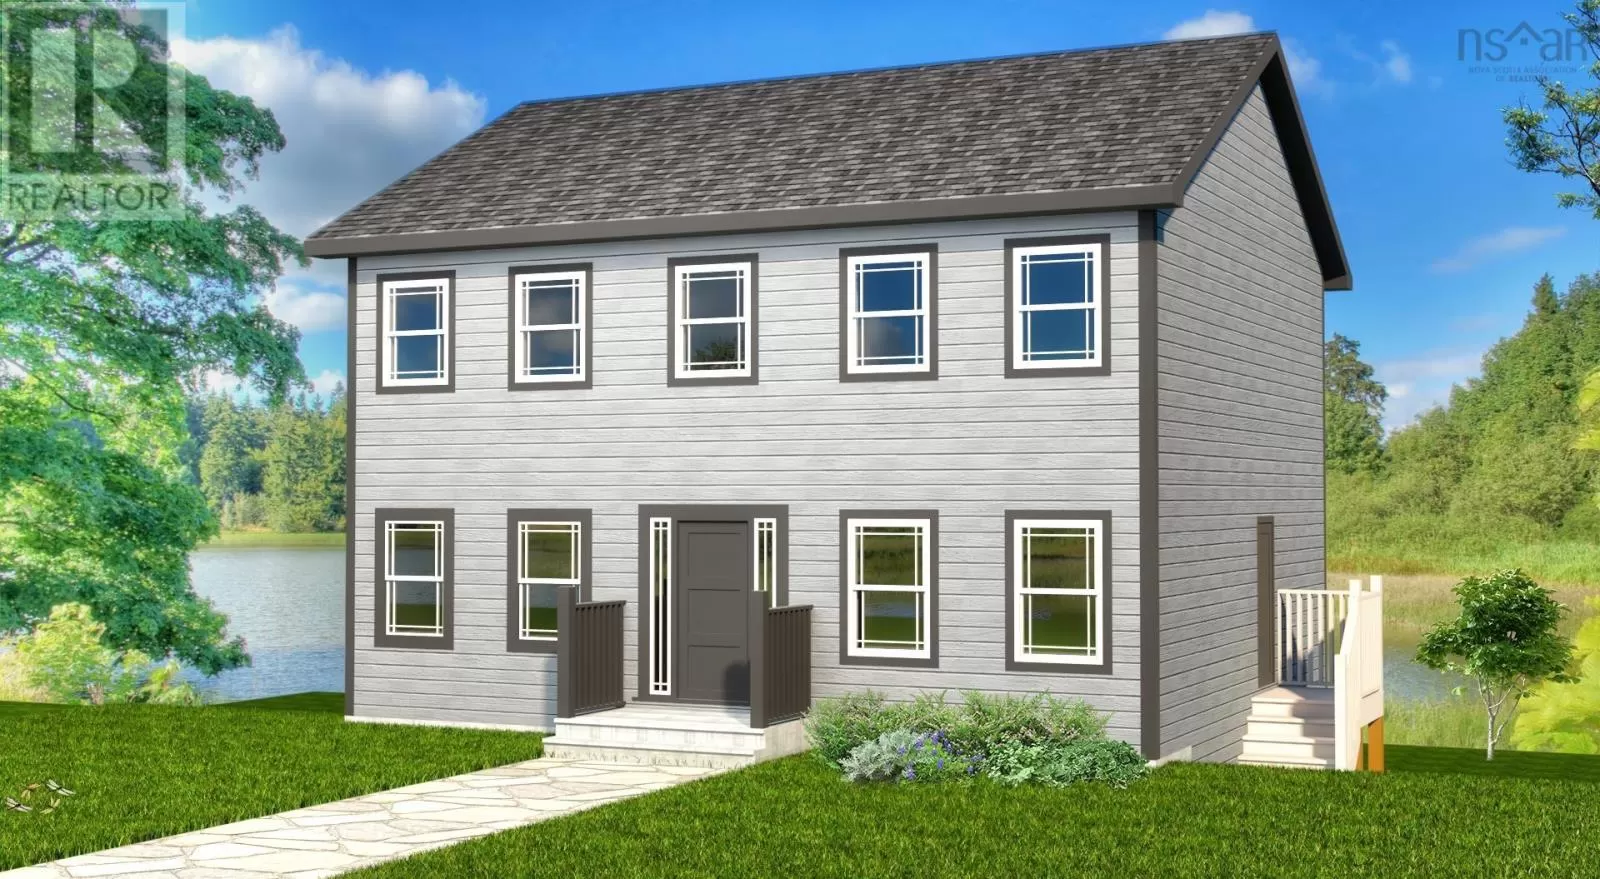 House for rent: Lot 549 Quail Ridge, Beaver Bank, Nova Scotia B4G 0G8